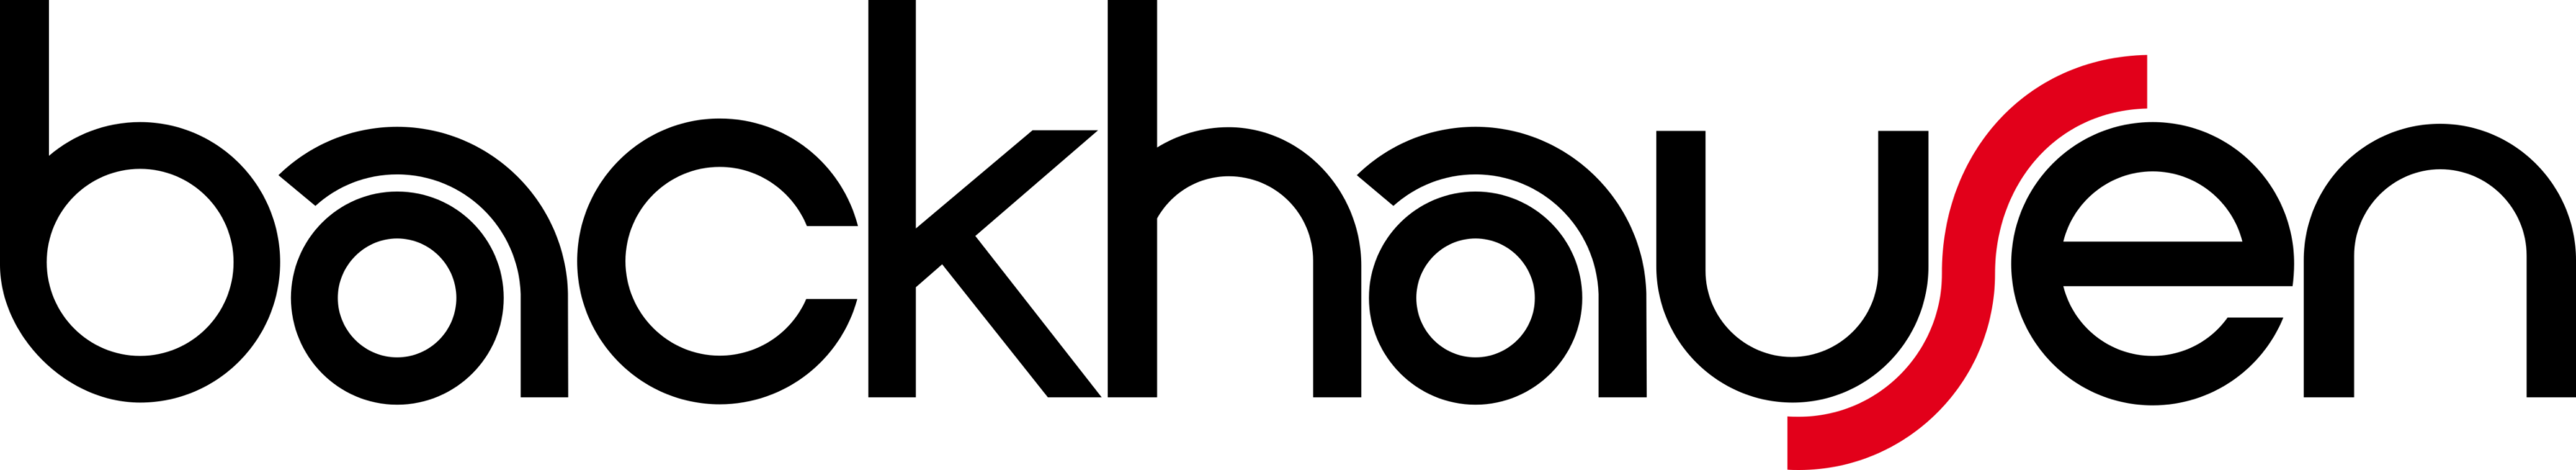 Backhausen GmbH Logo